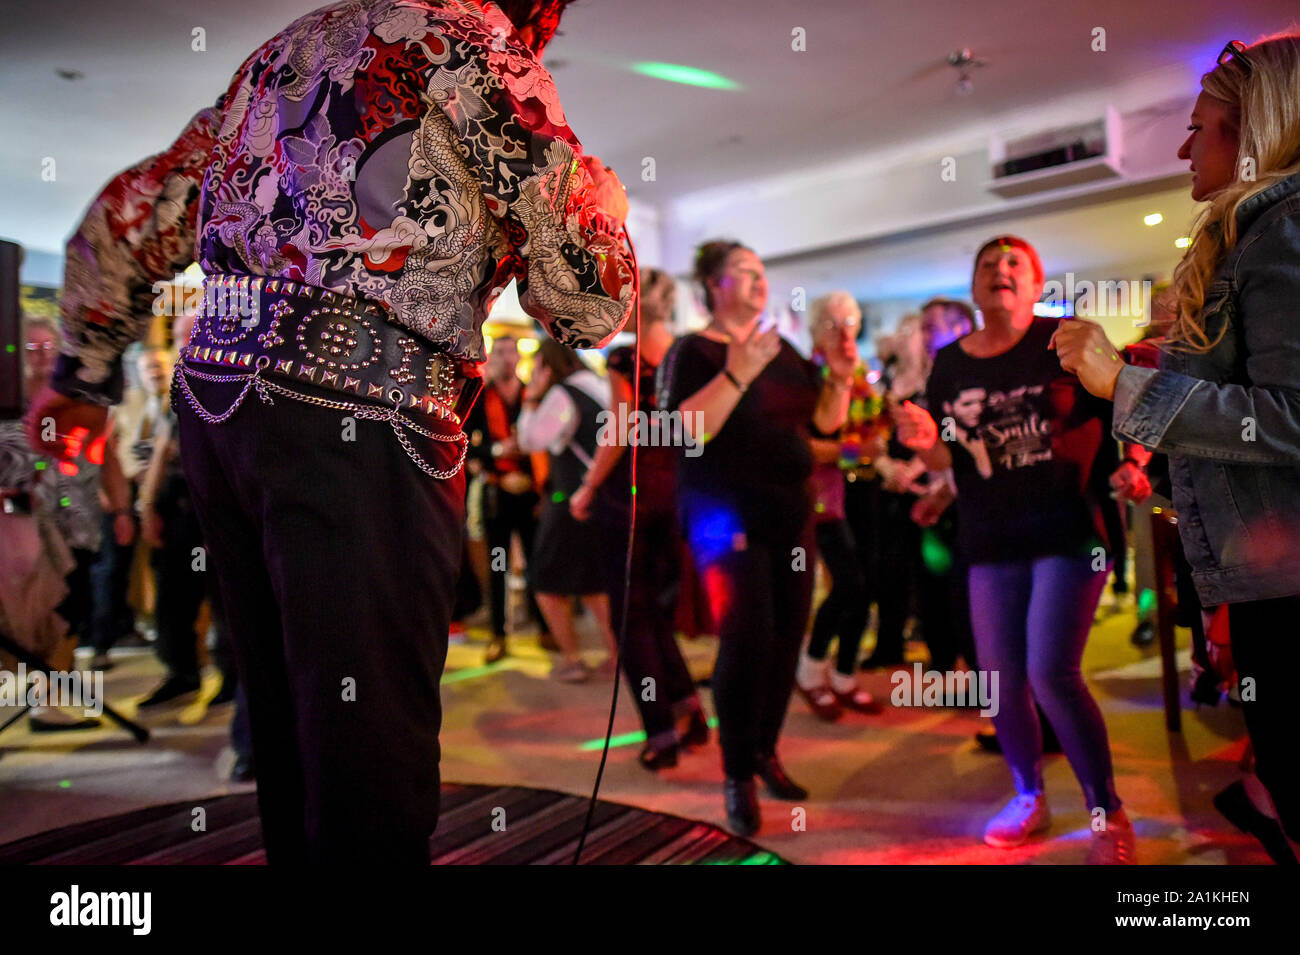 La gente ballare per un esecutore di Elvis all'interno di un pub all'annuale Porthcawl festival di Elvis in Galles del Sud. La manifestazione richiama migliaia di fan di Elvis alla Welsh cittadina balneare per celebrare il Re del Rock and Roll'. Foto Stock